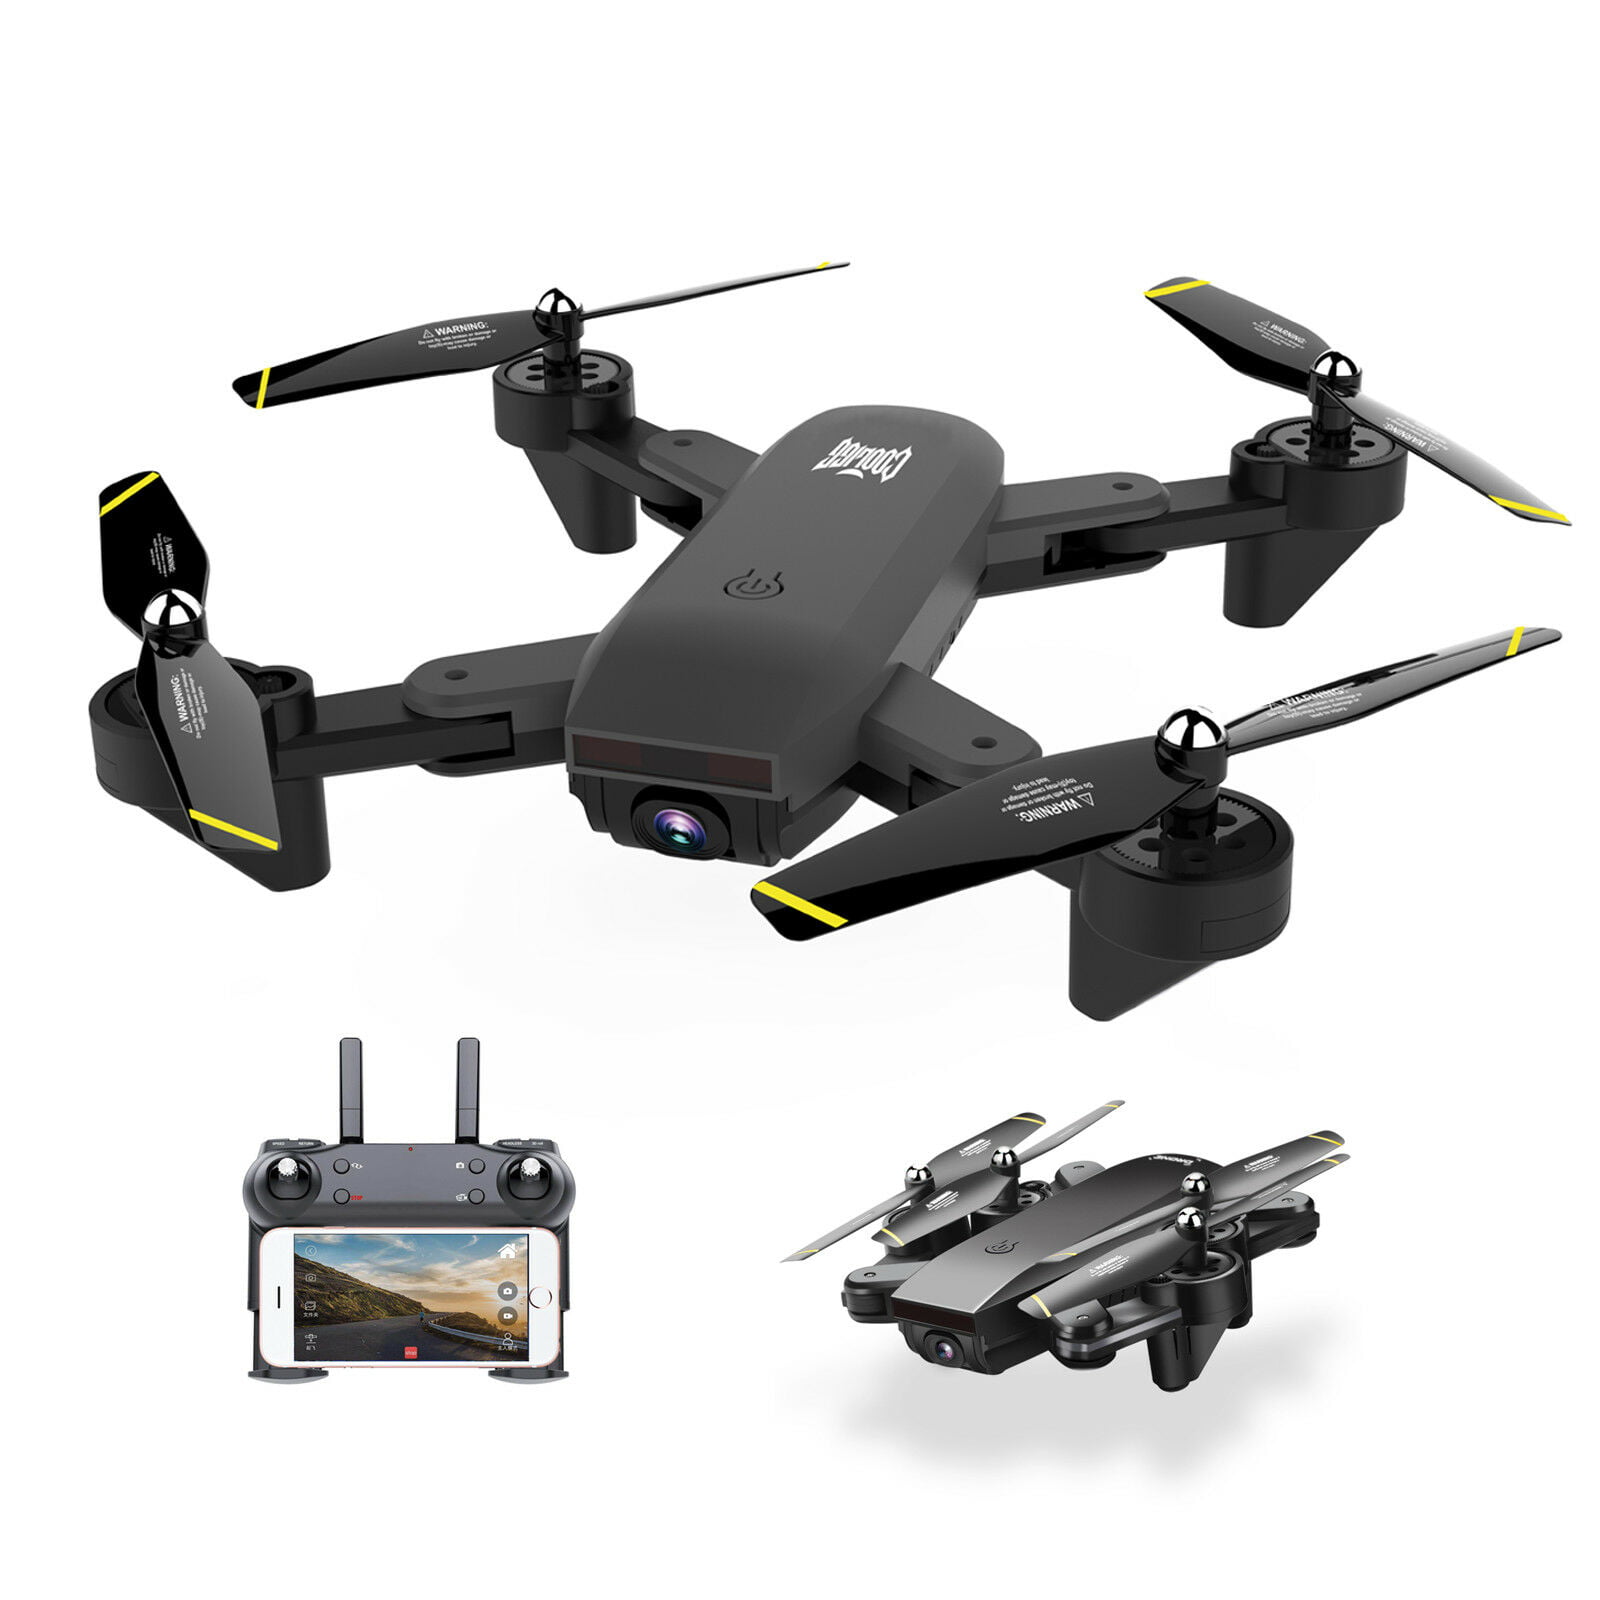 lbla s169 drone